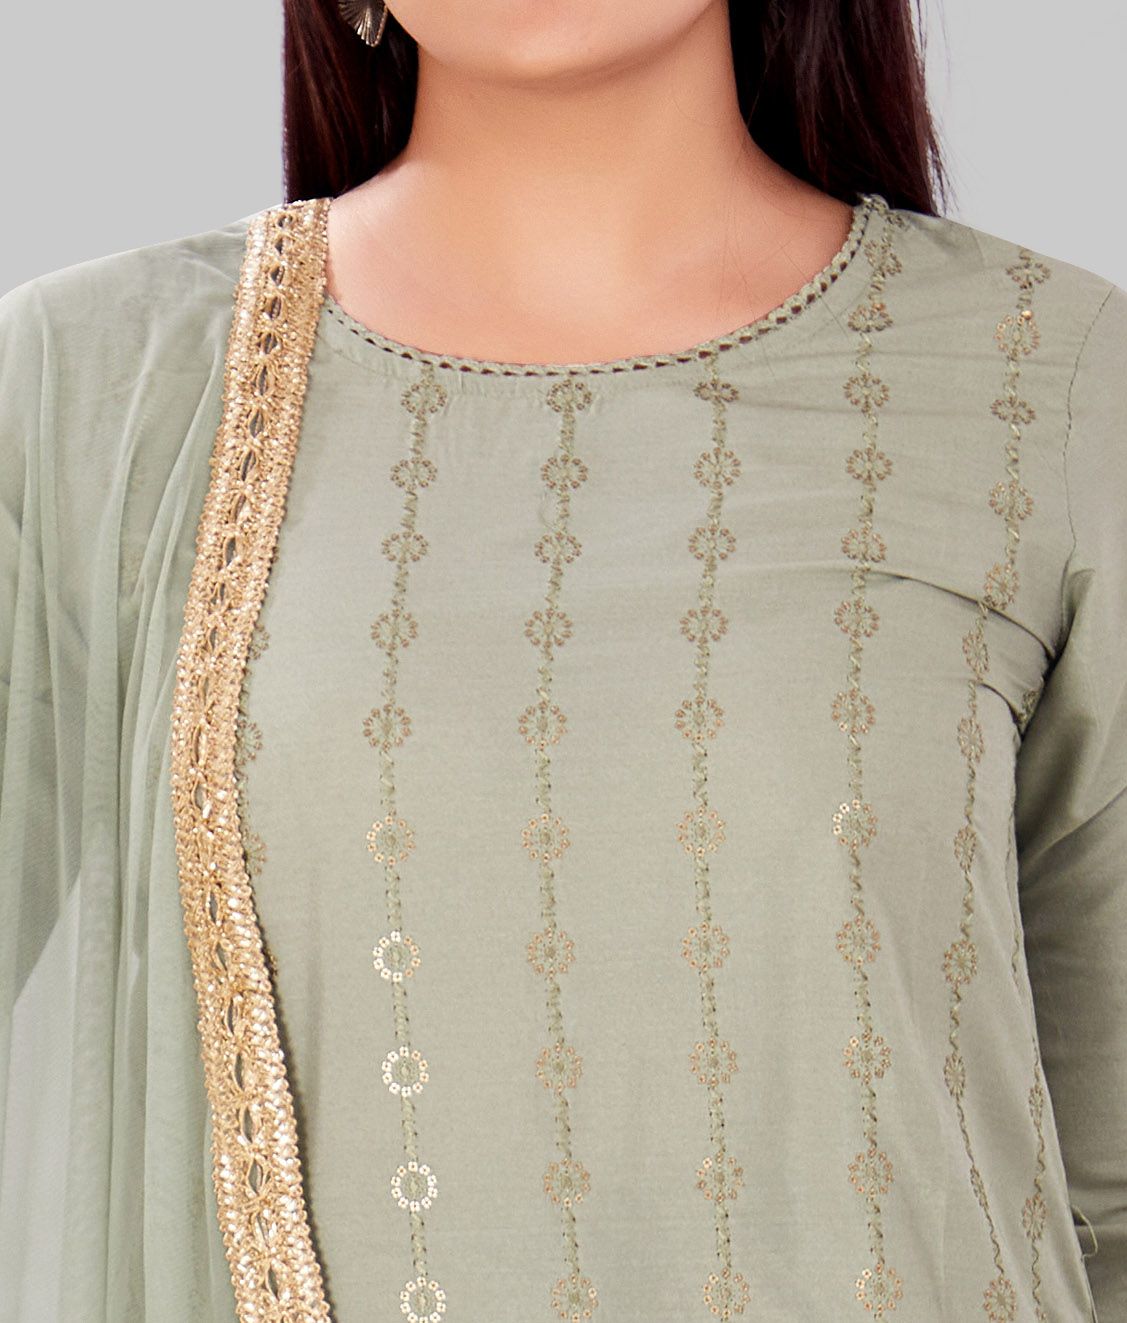 Ghazal Pista Green Cotton Silk Embroidered Suit Set